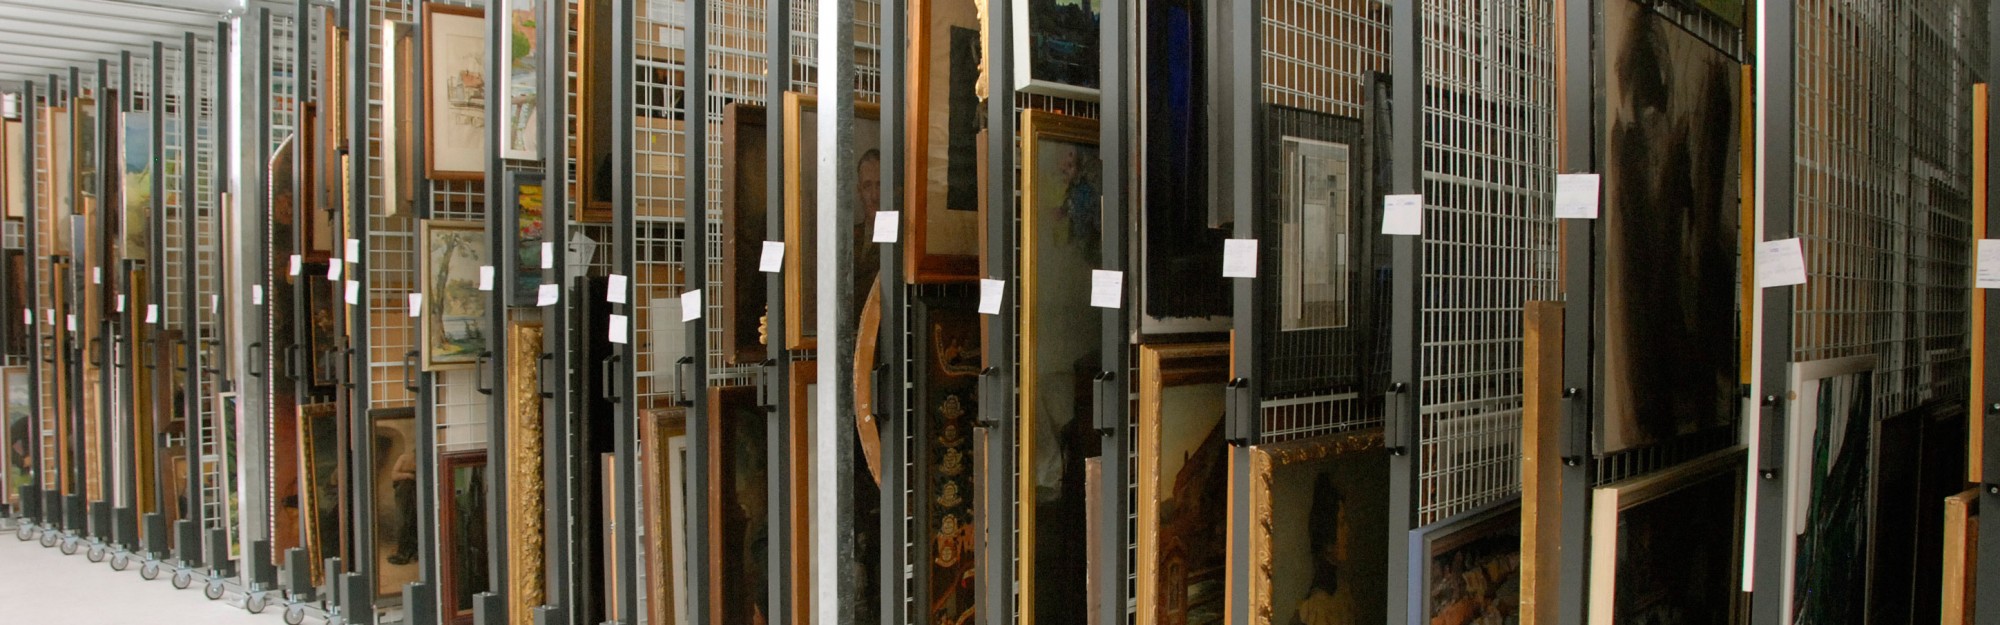 In der Gemäldezuganlage sind Gemälde an herausfahrbaren raumhohen Gittern aufgehängt und sortiert.